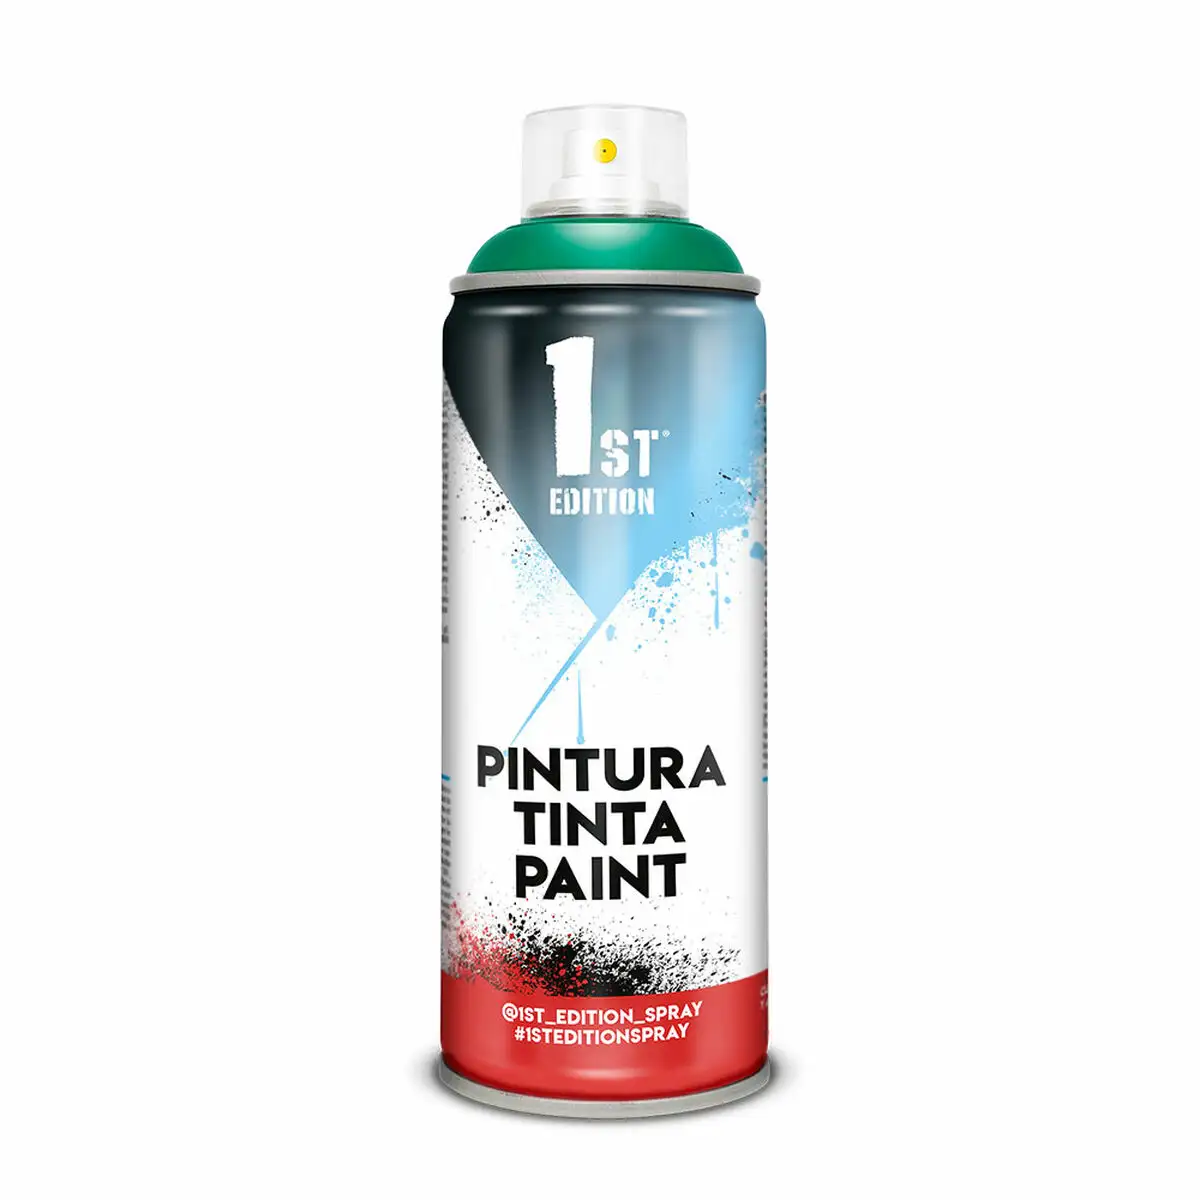 Peinture en spray 1st edition 651 pond green 300 ml_4235. DIAYTAR SENEGAL - Où Choisir Devient un Acte de Découverte. Découvrez notre gamme et choisissez des produits qui éveillent votre curiosité et élargissent vos horizons.